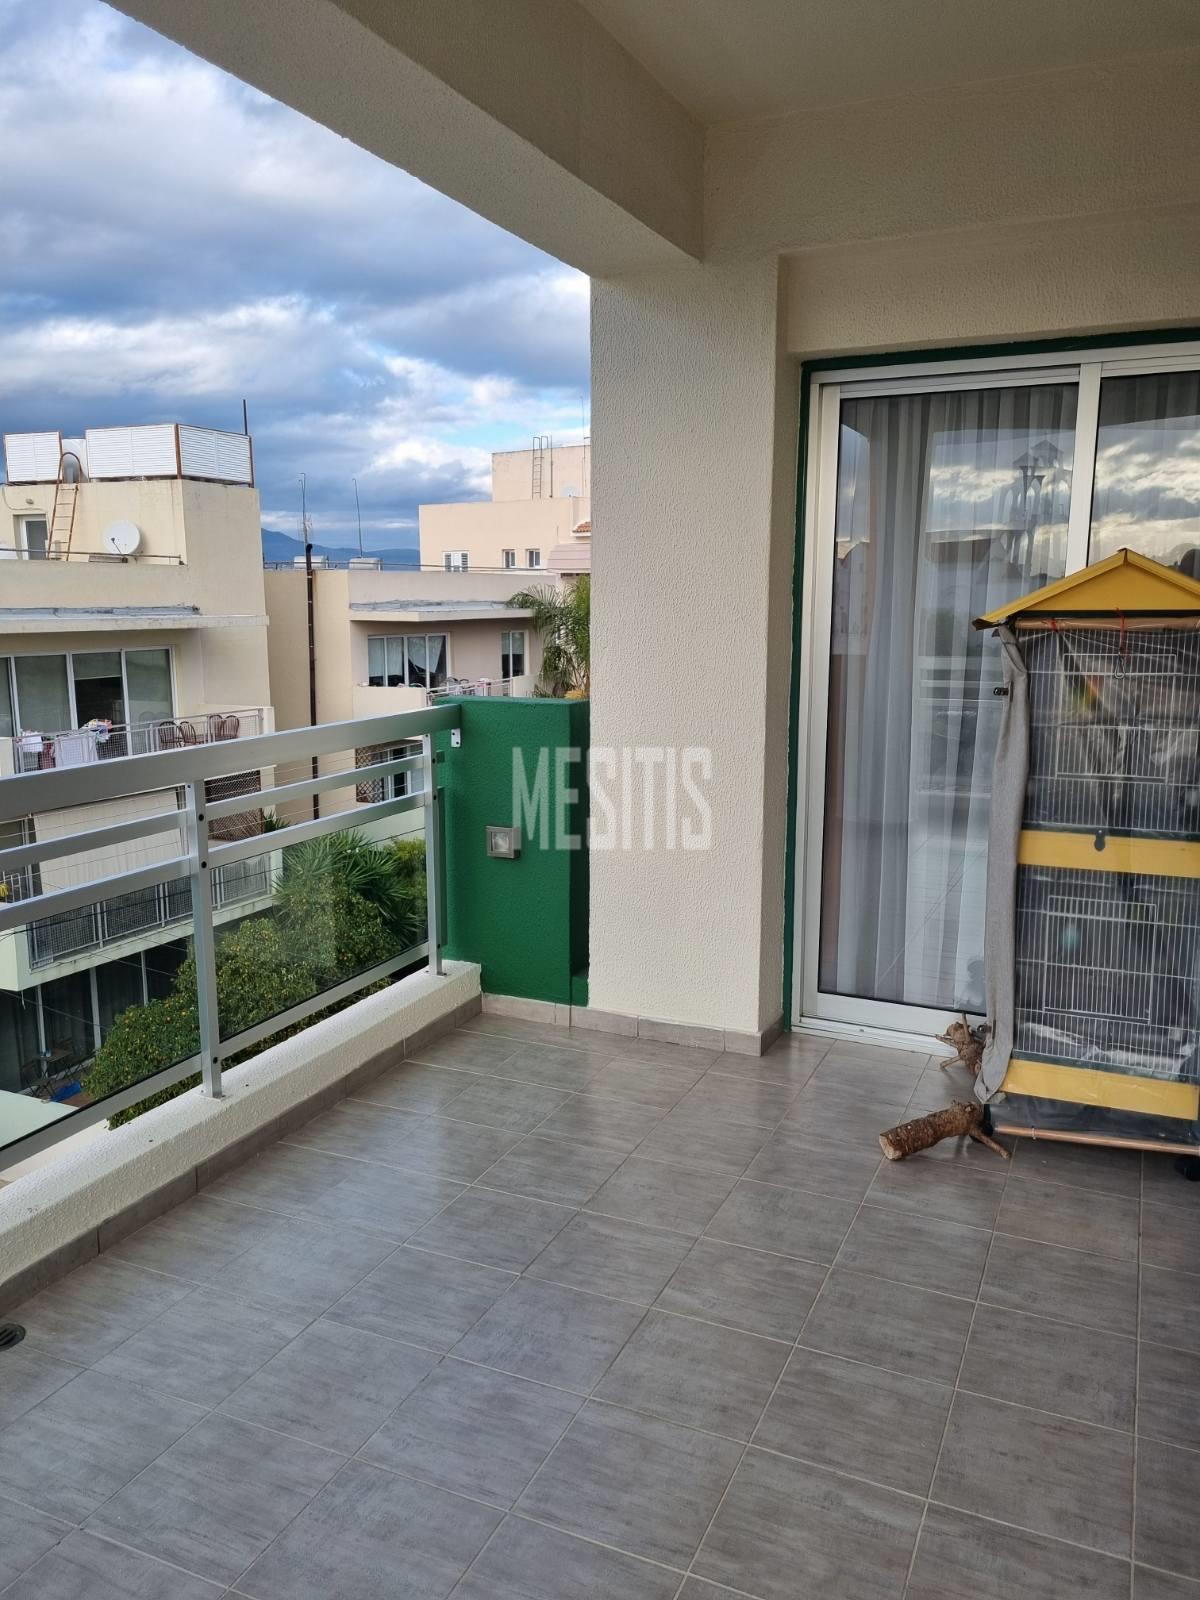 3 Βedroom Τop Floor Apartment For Sale In A Prime Location With Large Spaces And Incredible Aesthetics Αnd Views To All Of Nicosia #30861-21